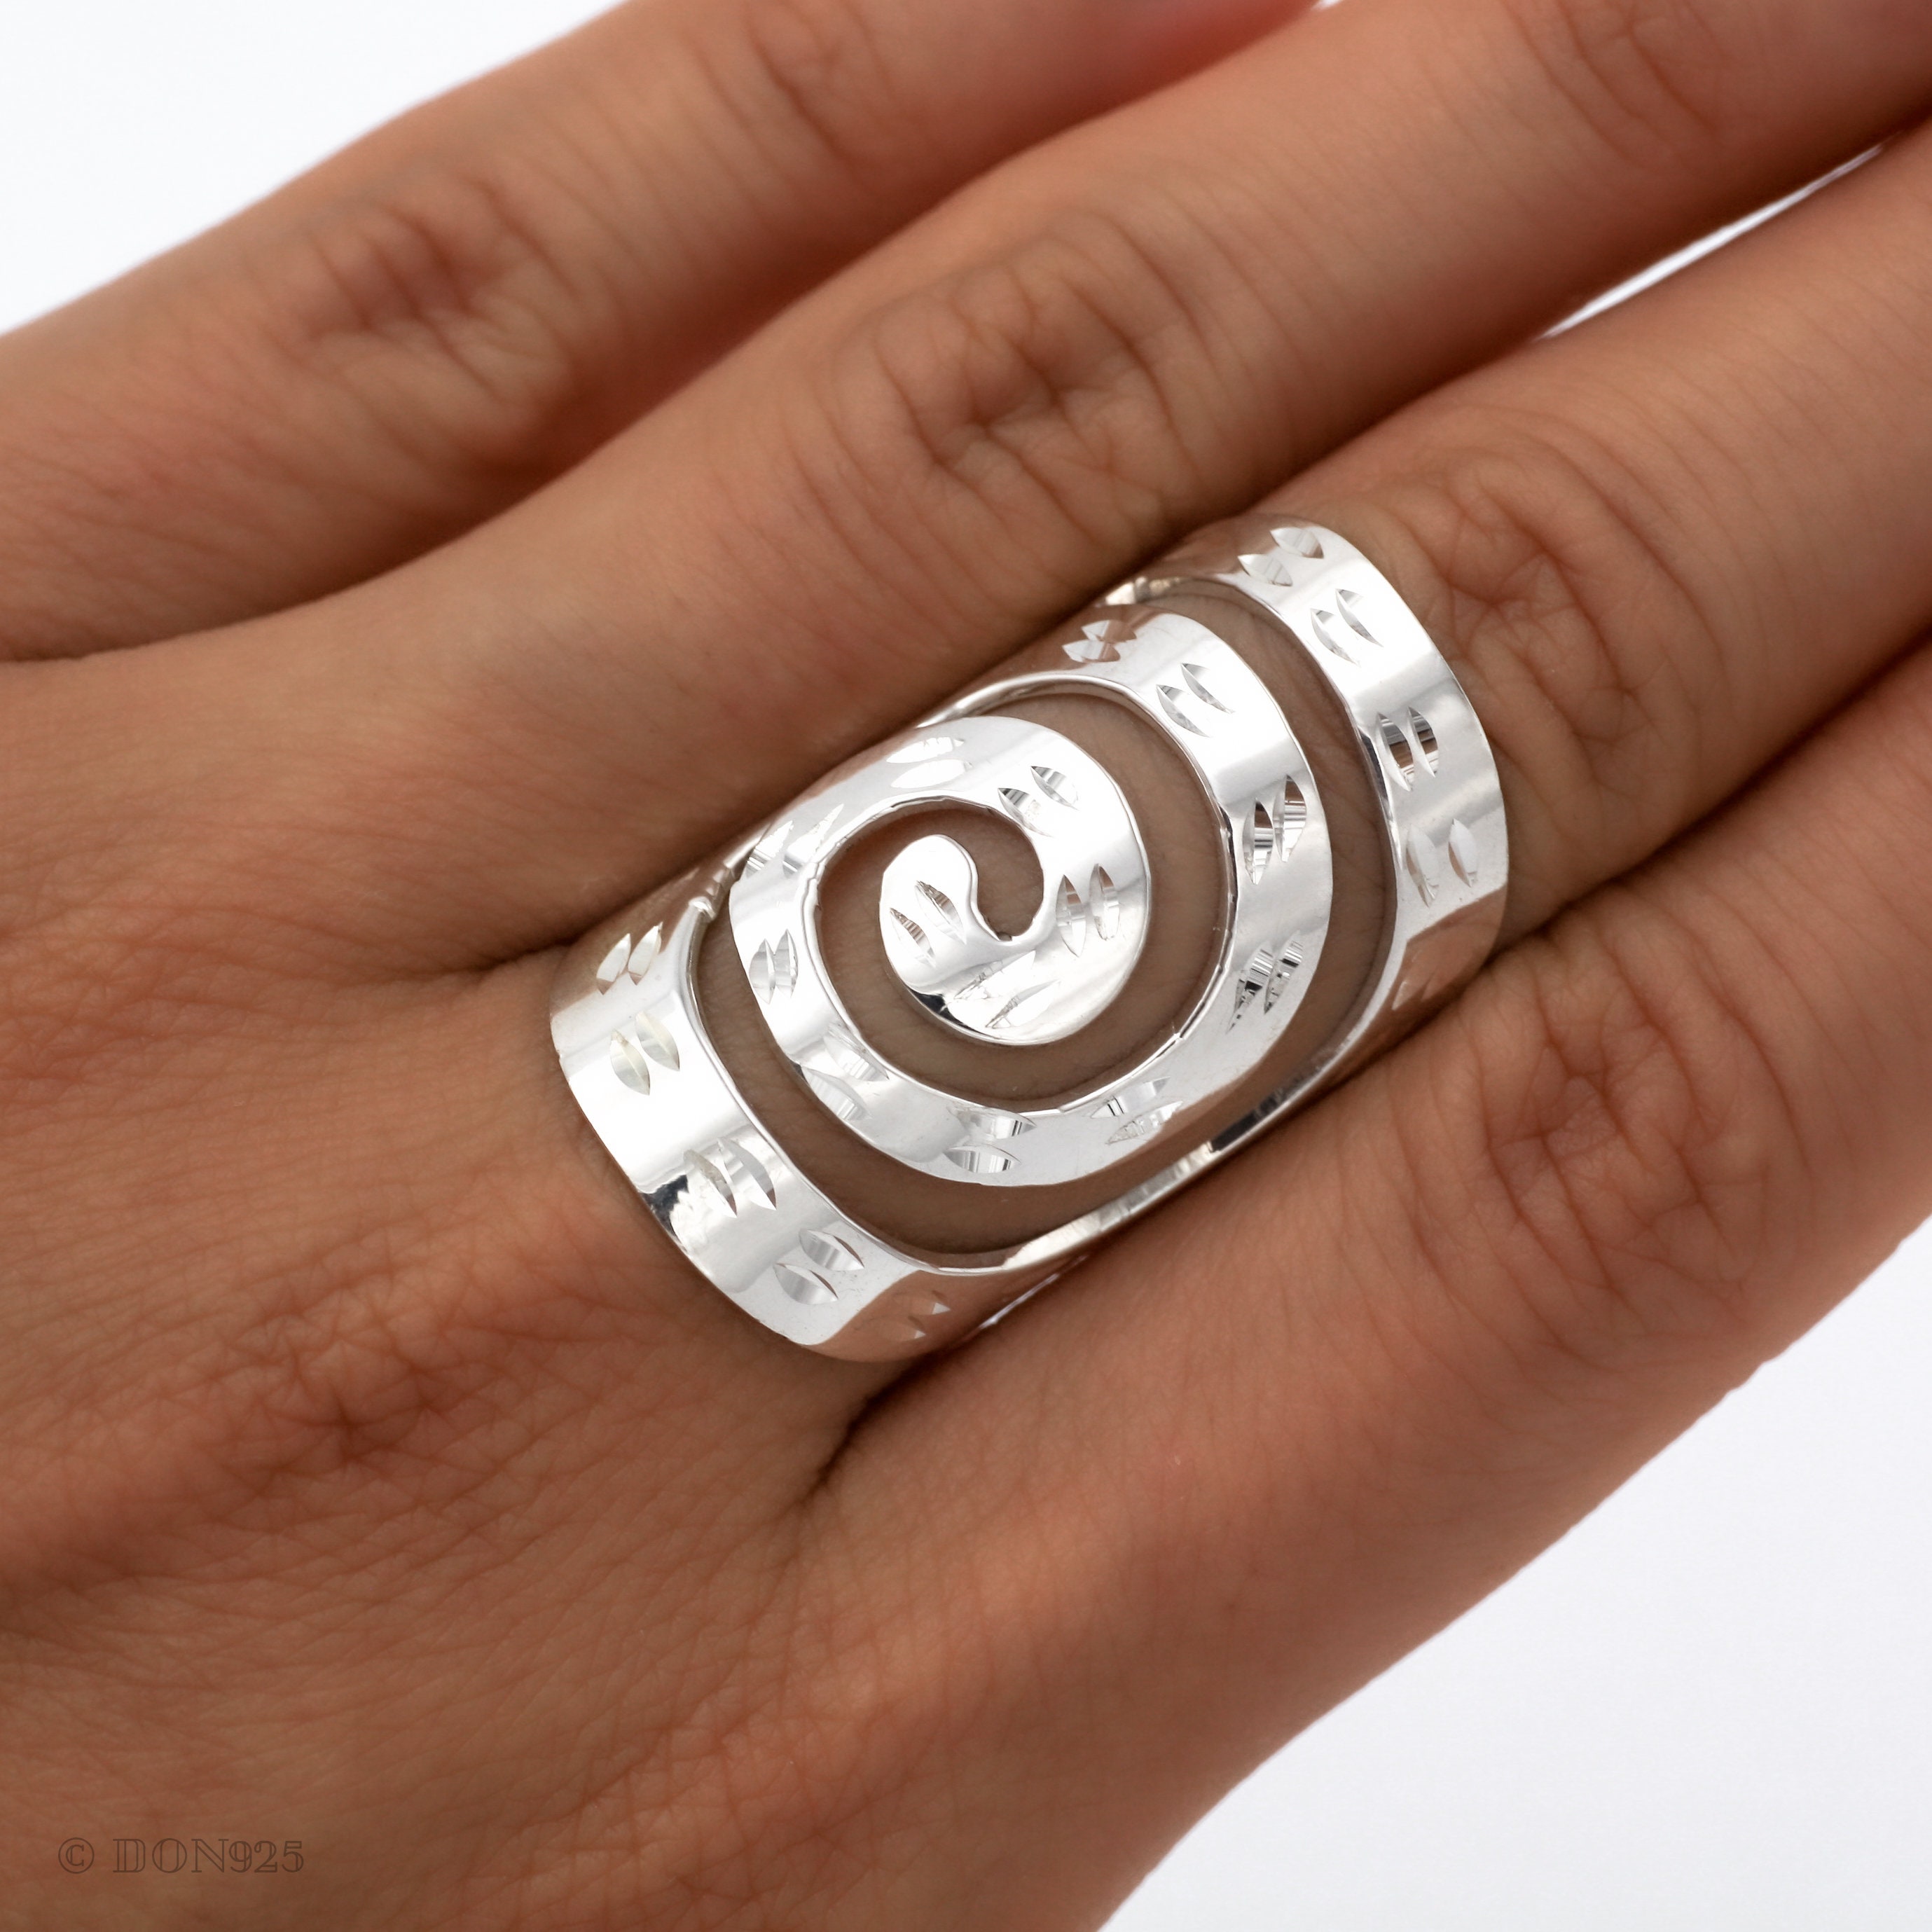 10 Spiral Ring Adjuster Size Adjuster Spirals Reducer Ring Sizer Spiral Ring  Adjuster Jewellery Tools DIY 